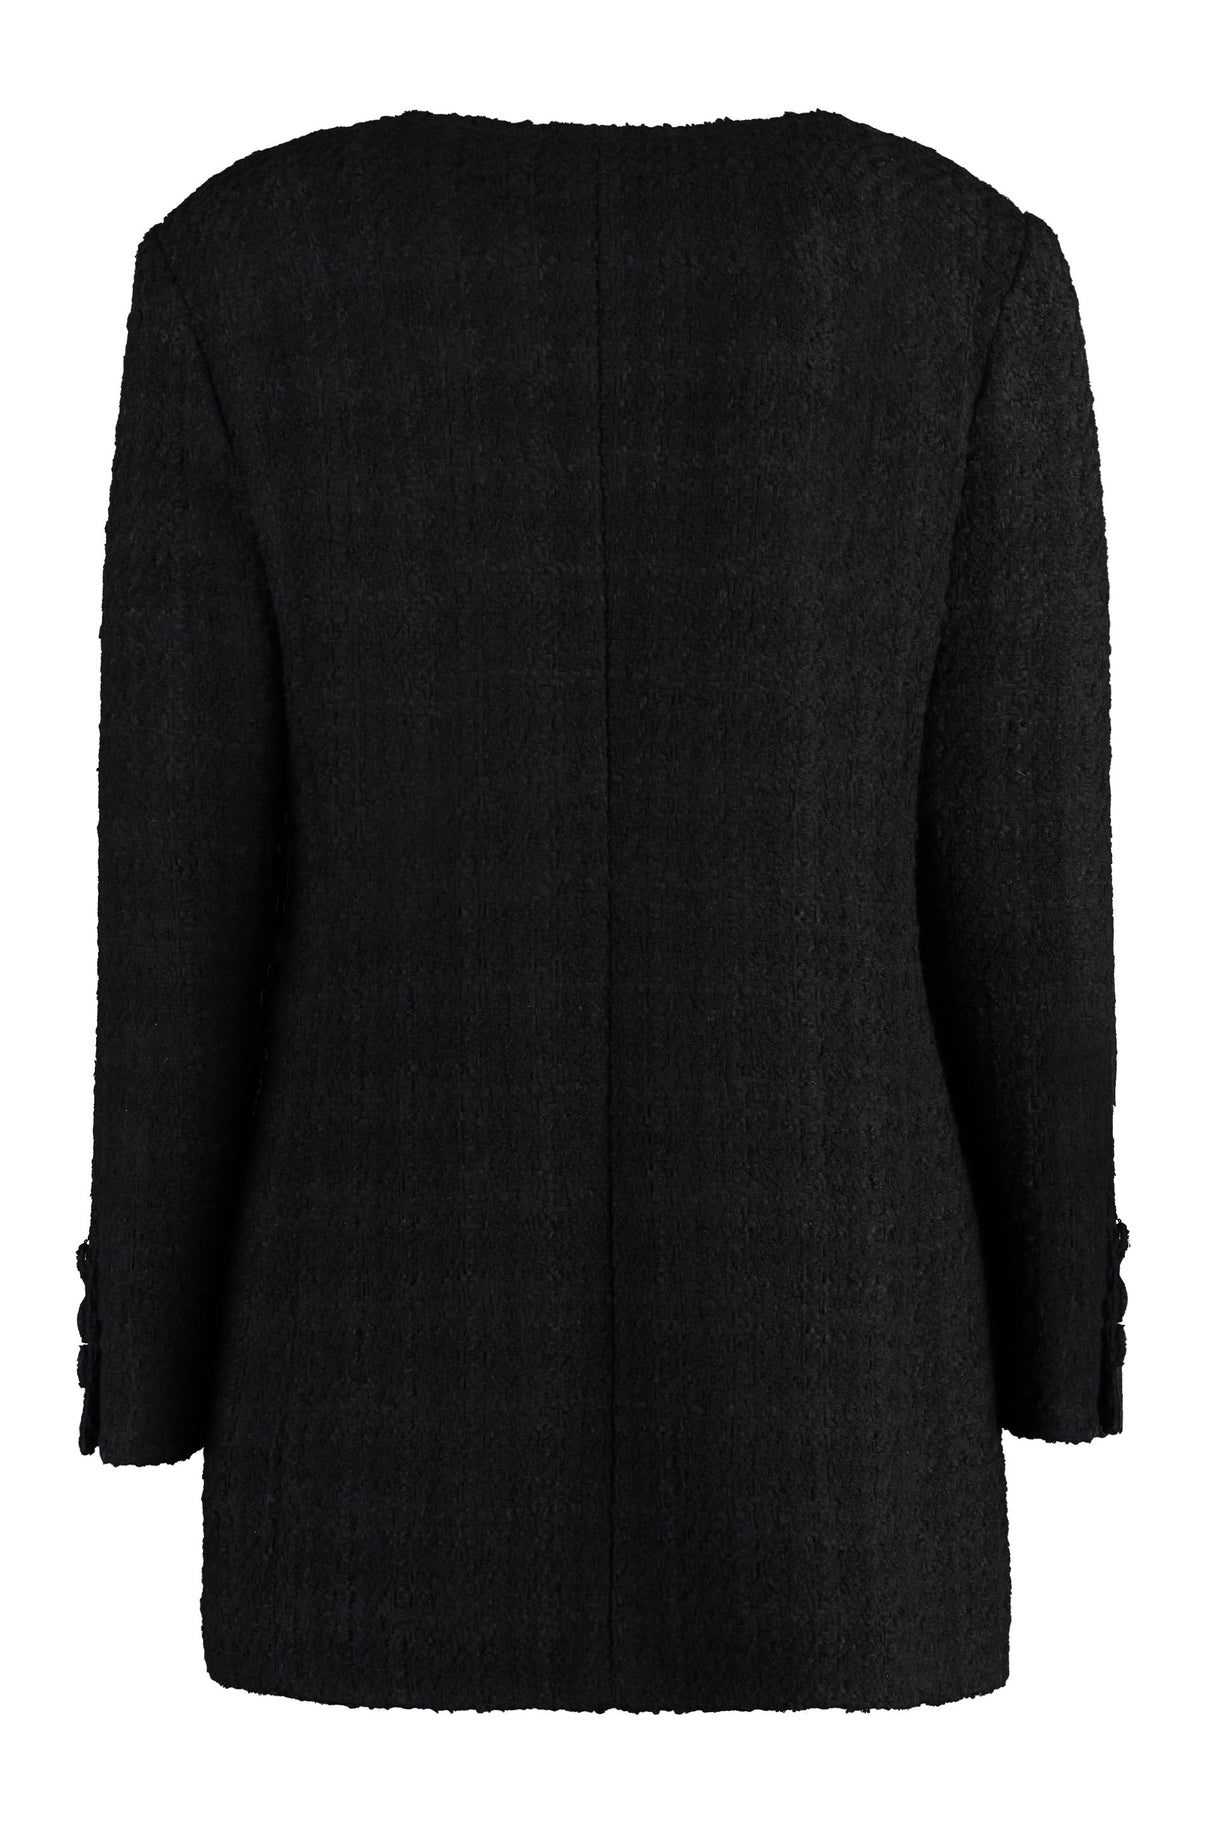 GUCCI Stylish Women's Wool Jacket